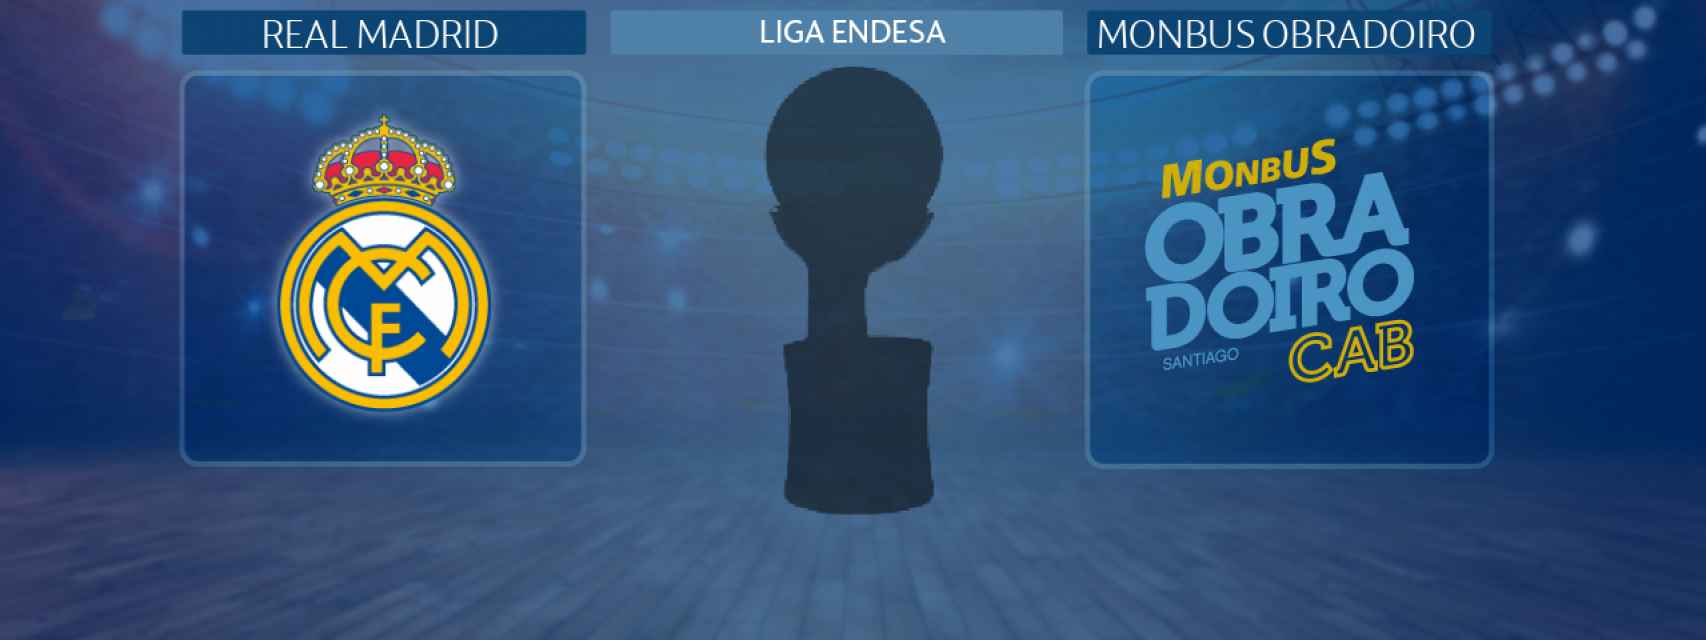 Real Madrid - Monbus Obradoiro, partido de la Liga Endesa